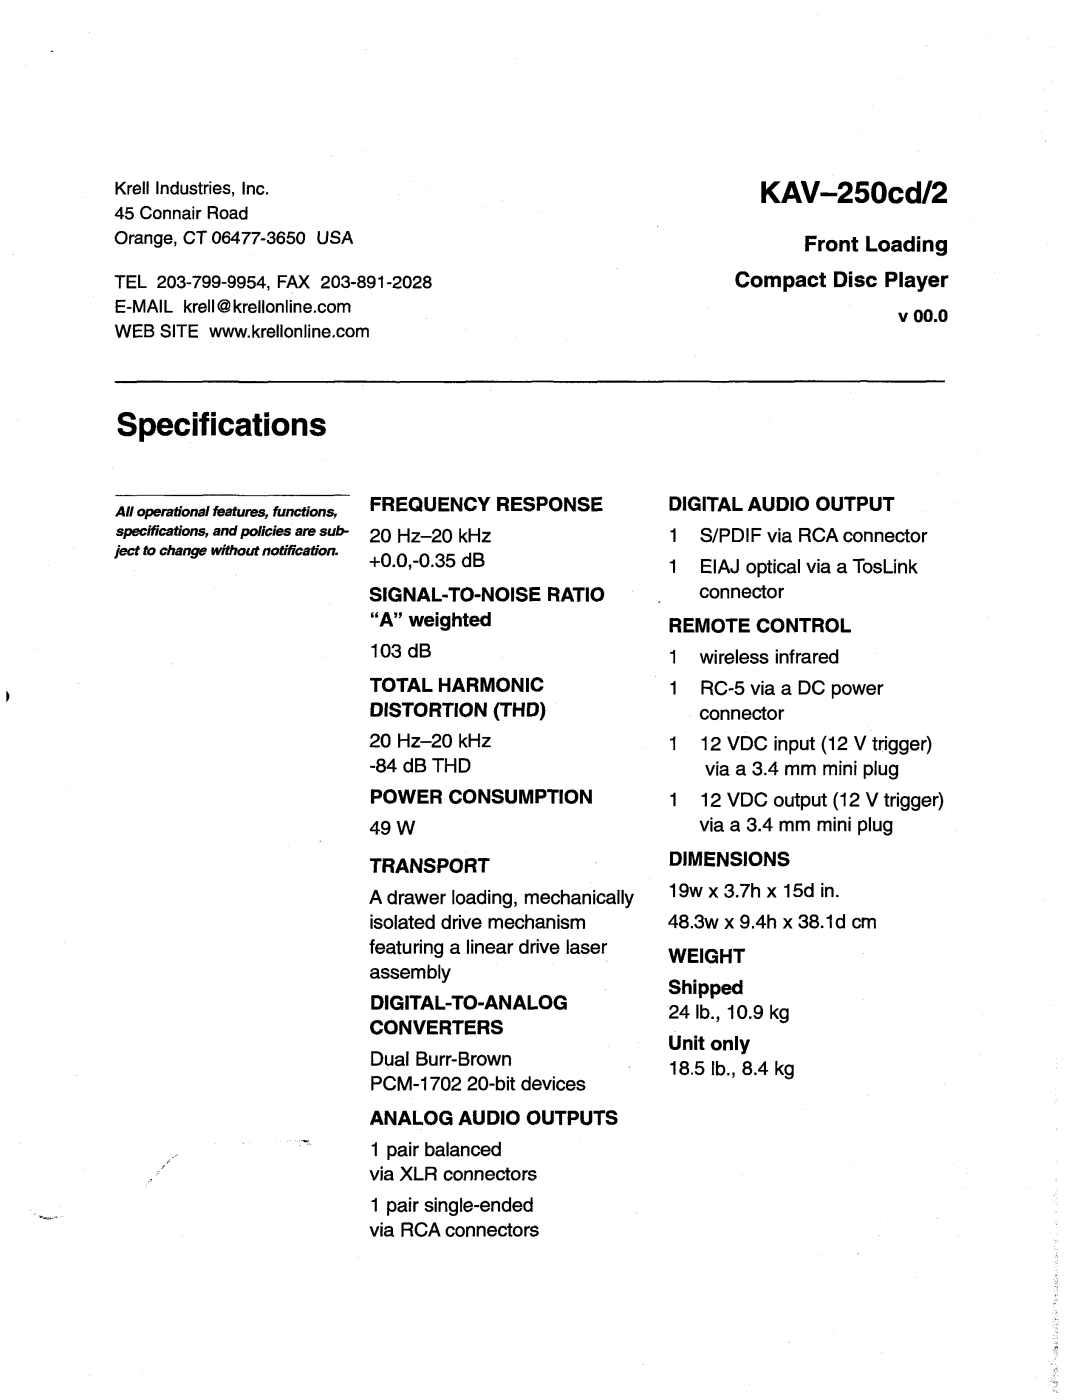 Krell Industries KAV-250cd/2 manual Specifications 